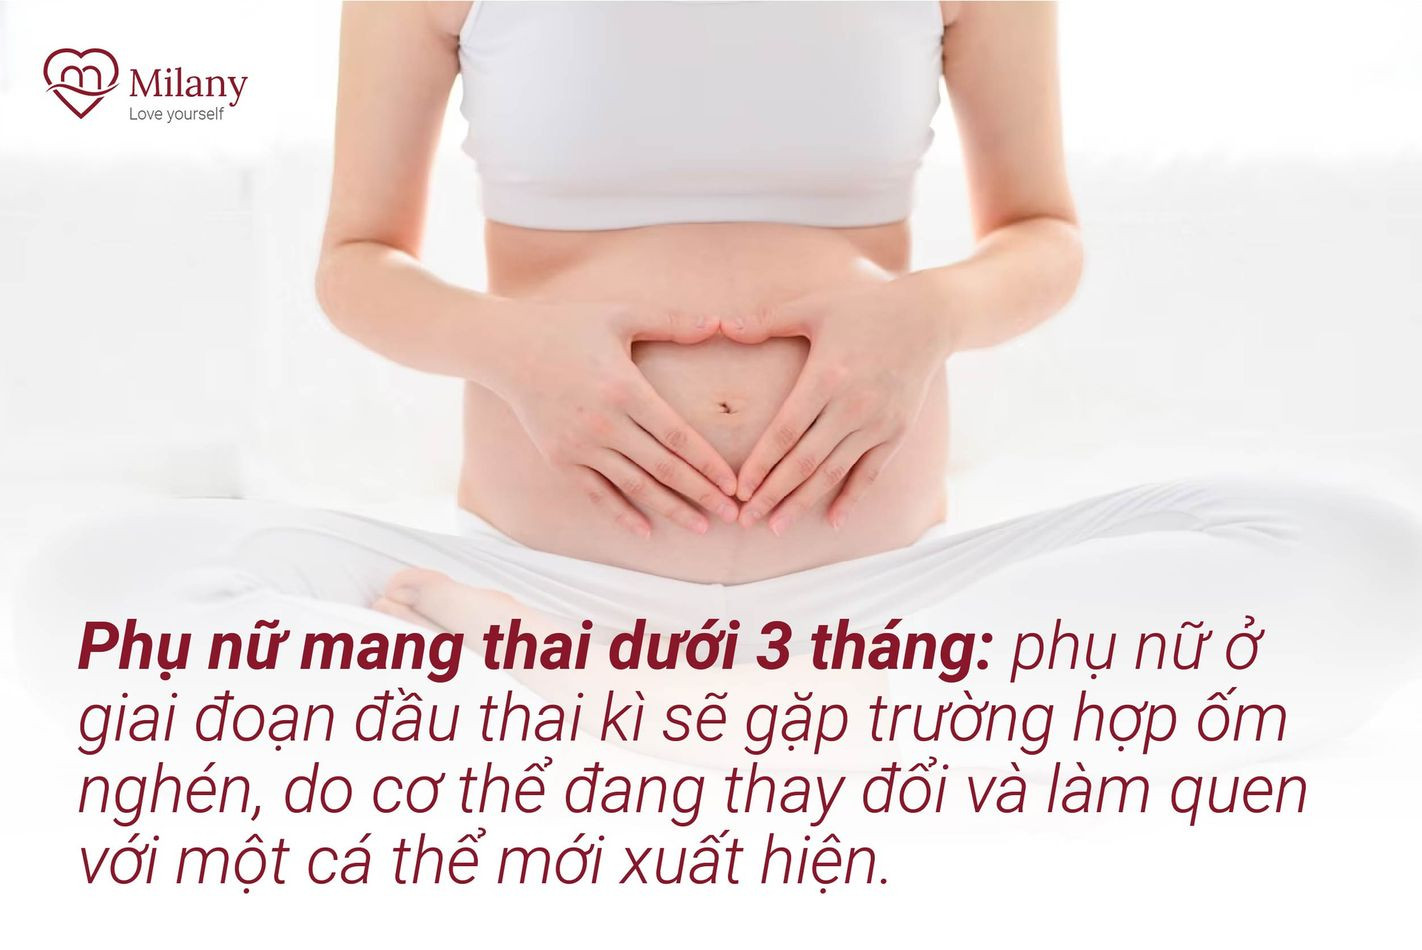 phu nu mang thai duoi 3 thang khong nen an yen sao